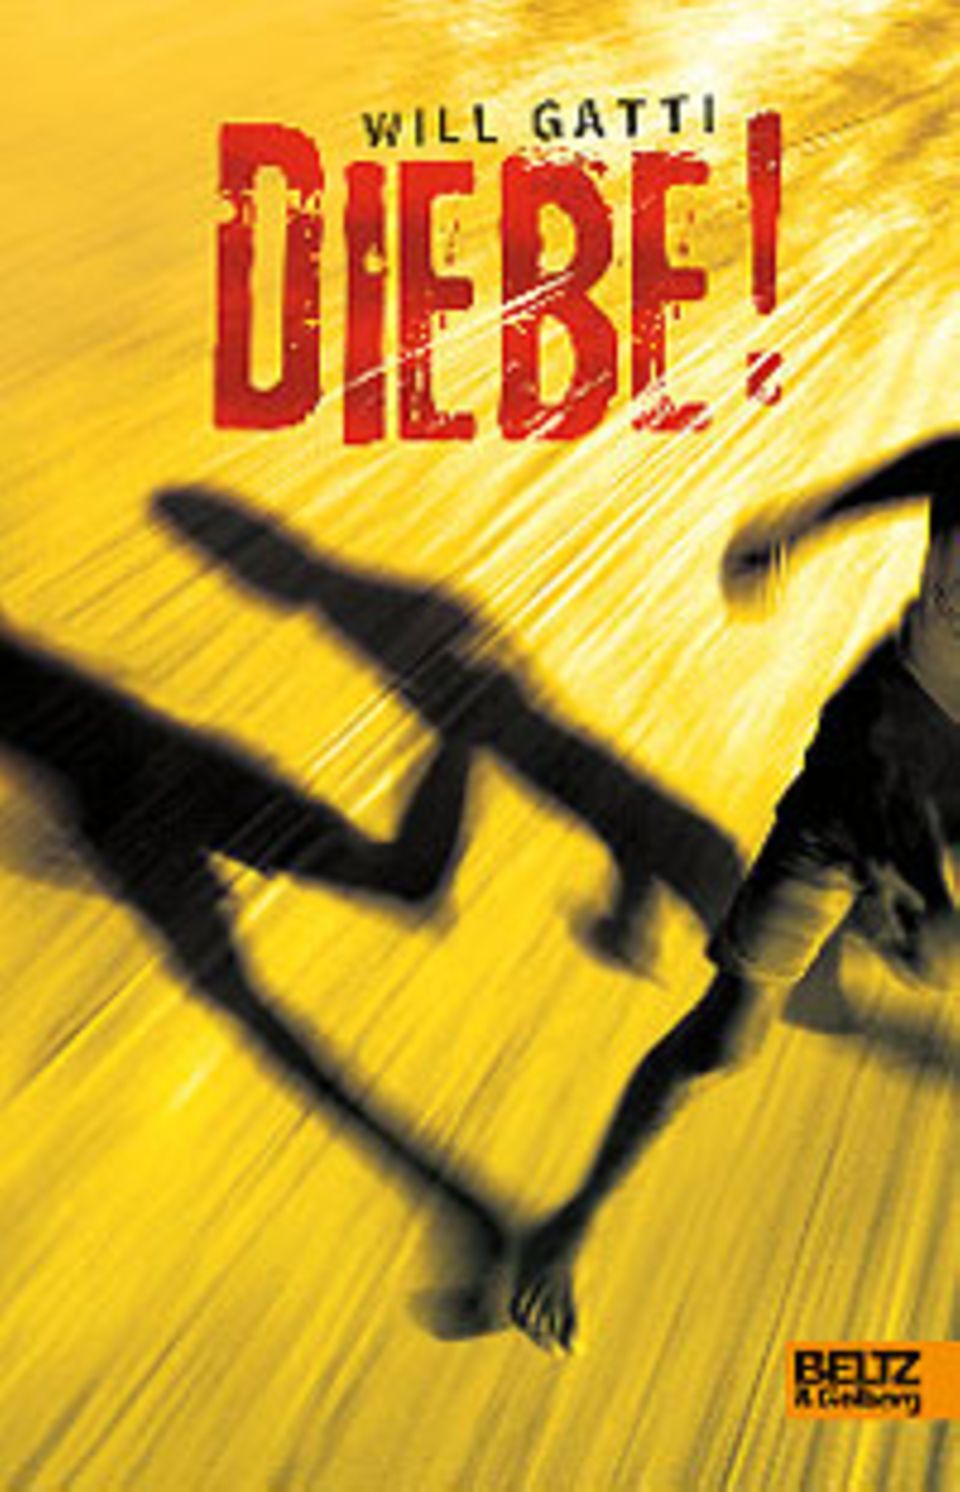 Cover des Romans "Diebe!" von Will Gatti